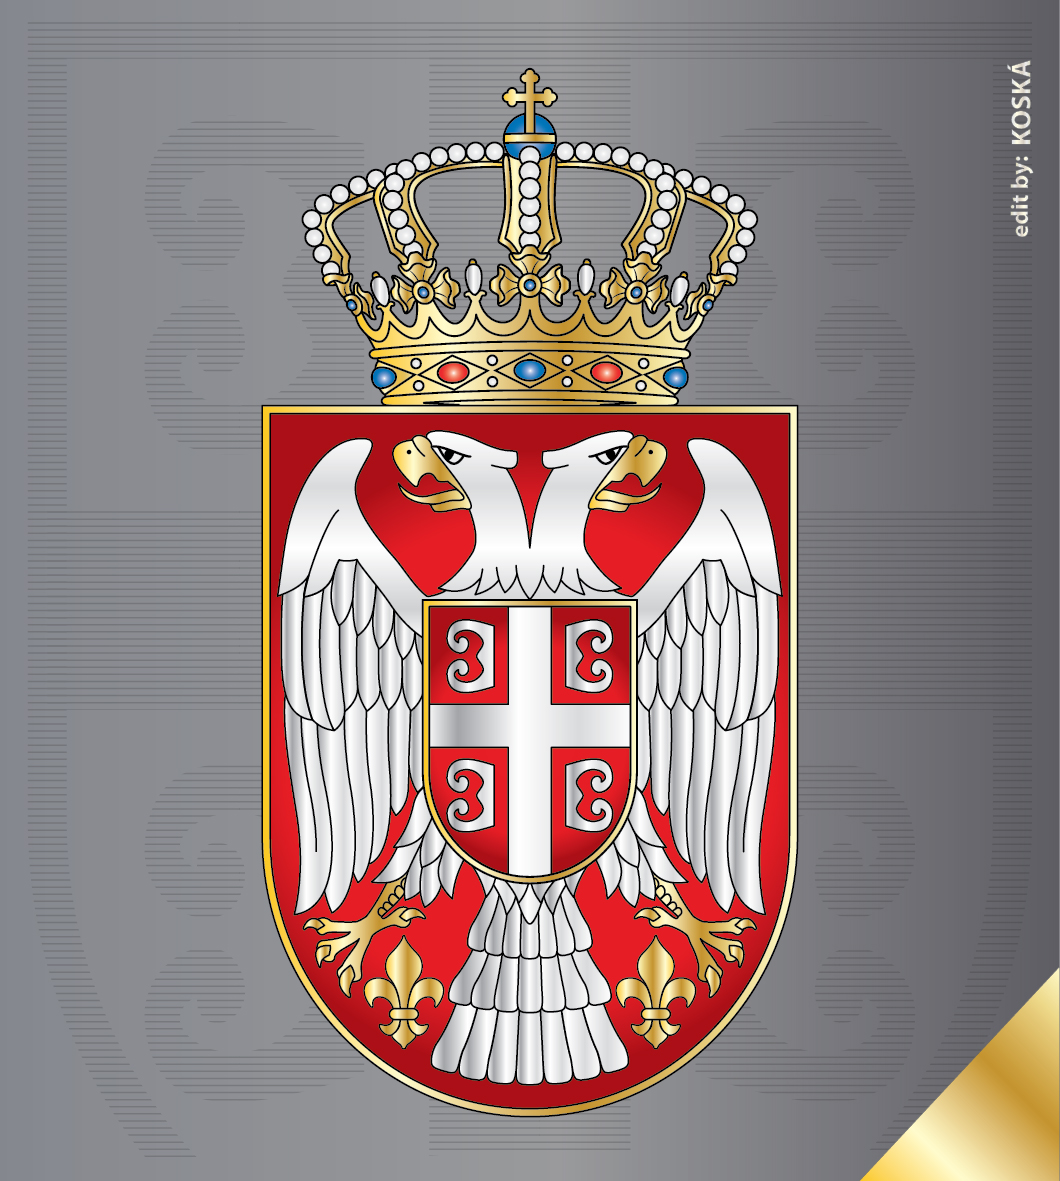 Srpski grb iz 1882.godine - Nekada grb Kraljevine Srbije za vreme ...